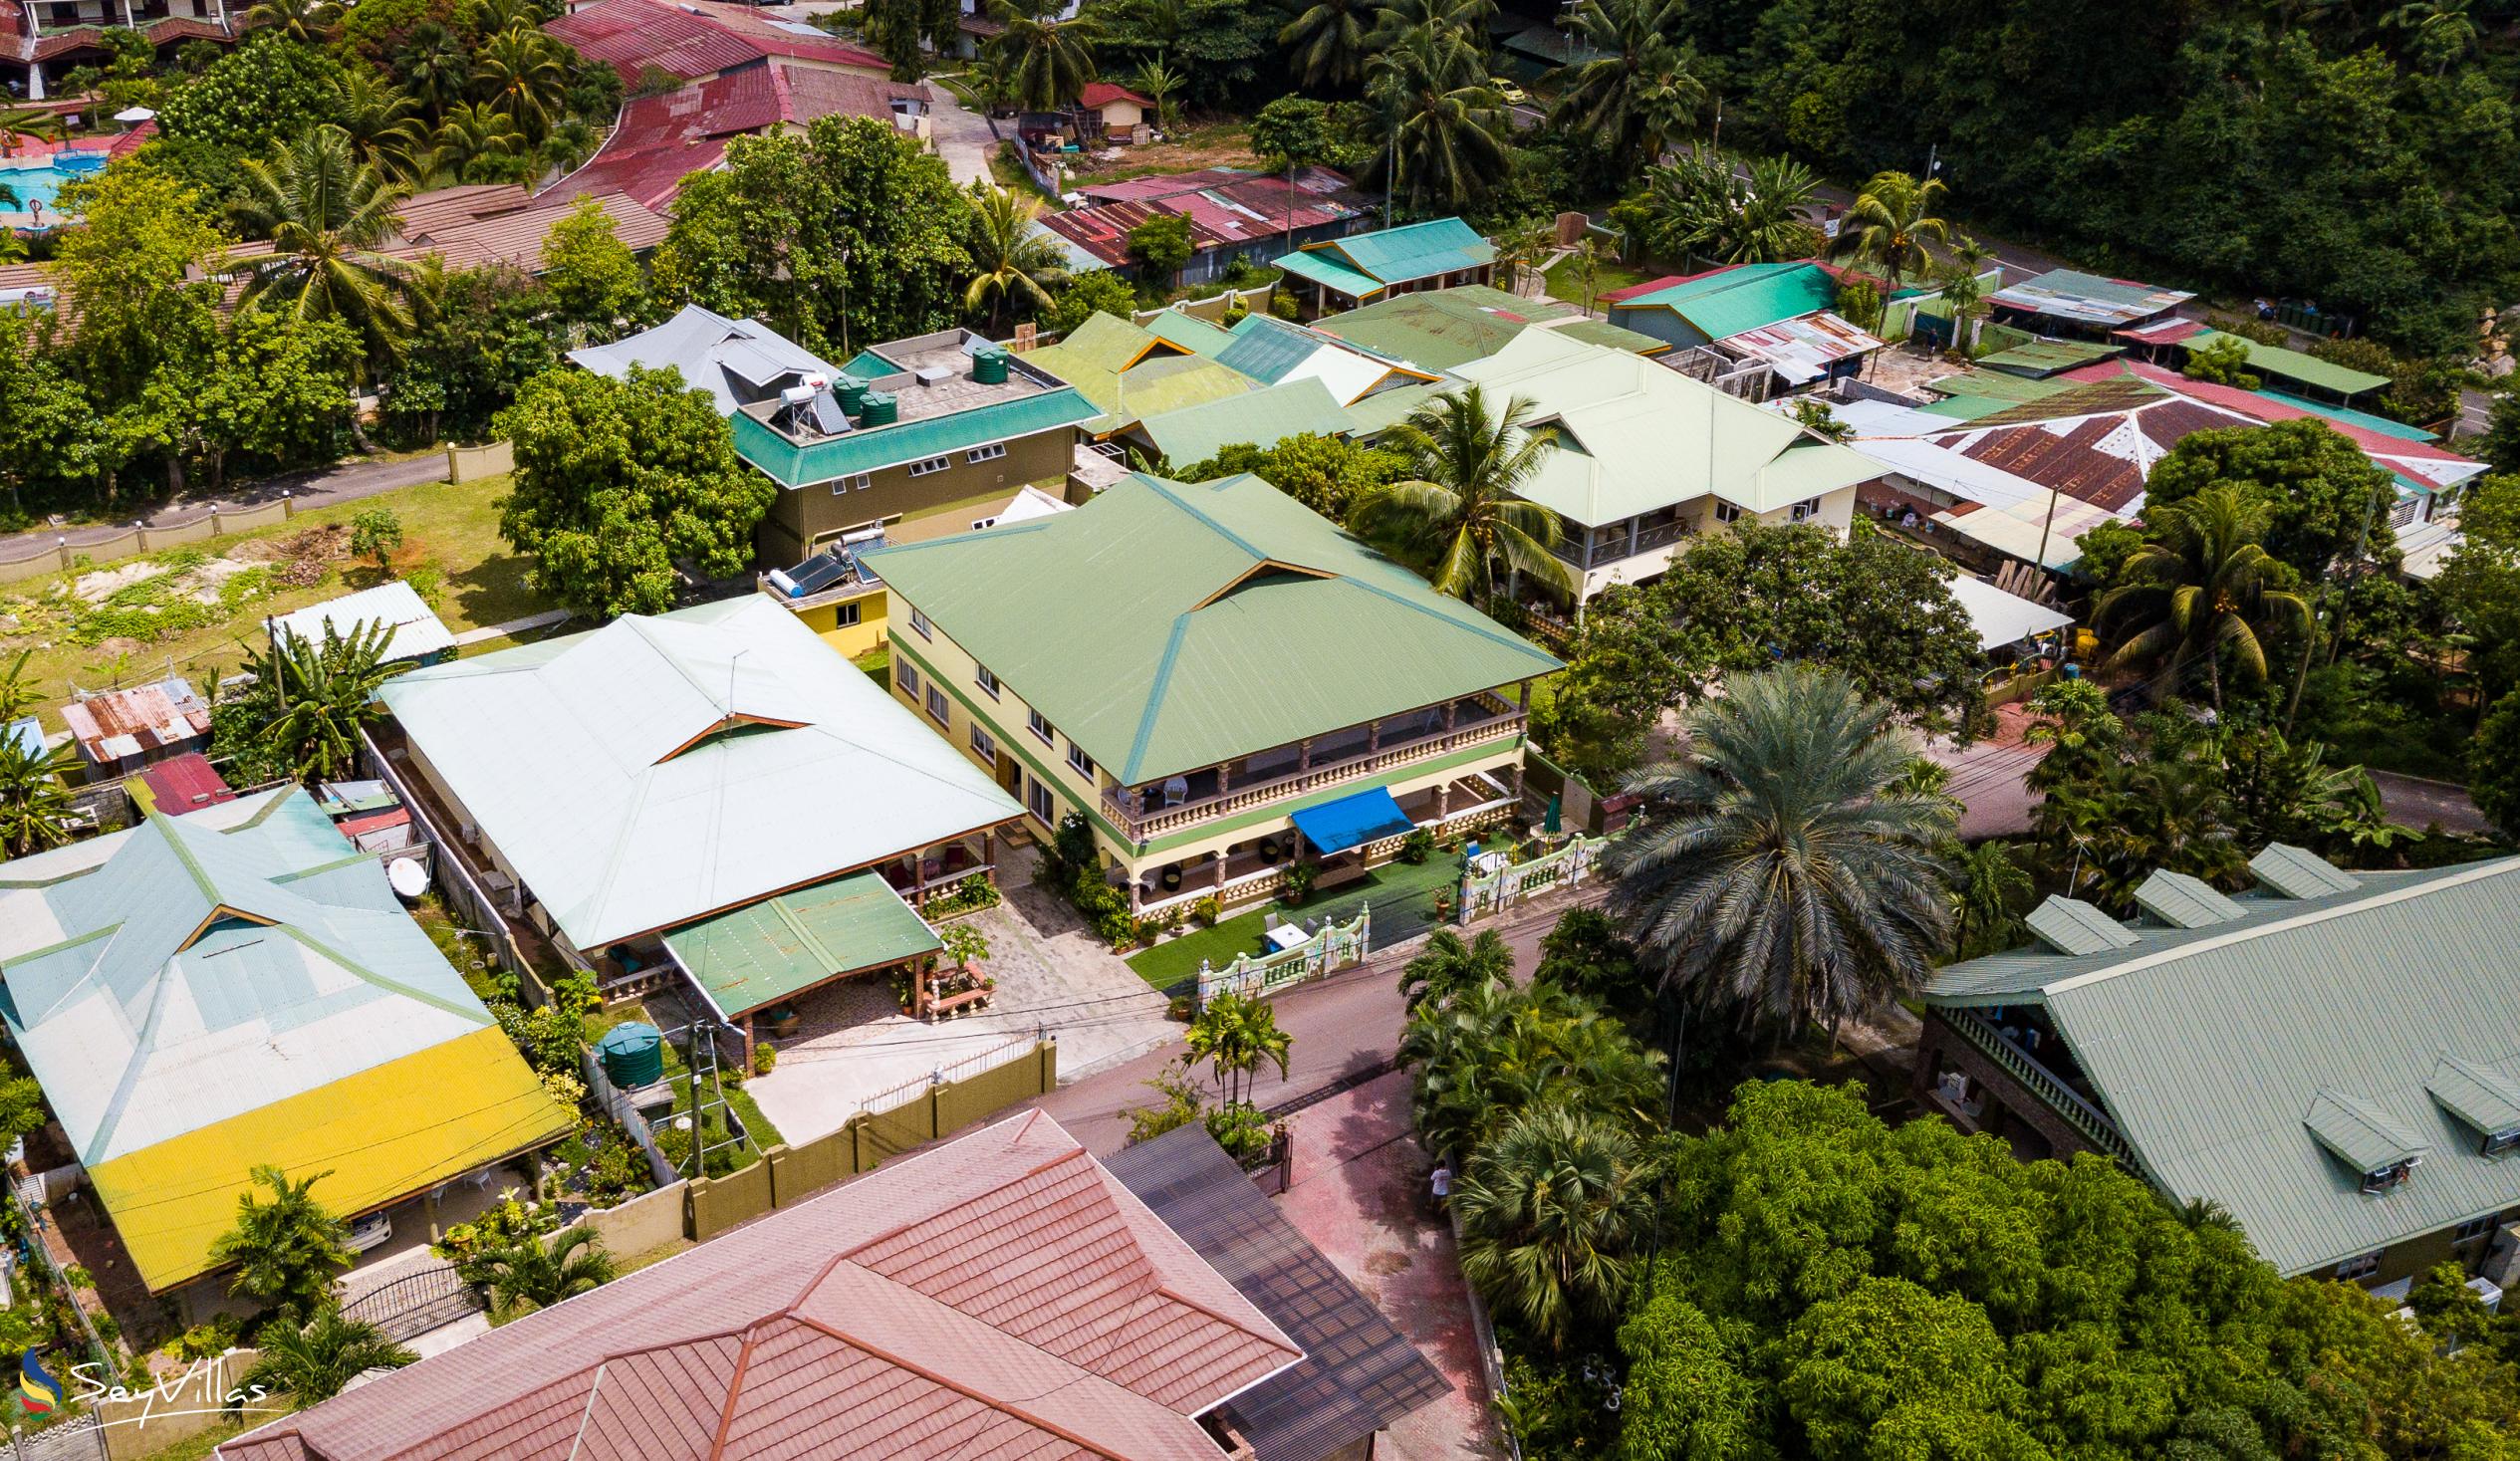 Foto 26: Villa Bananier - Aussenbereich - Praslin (Seychellen)